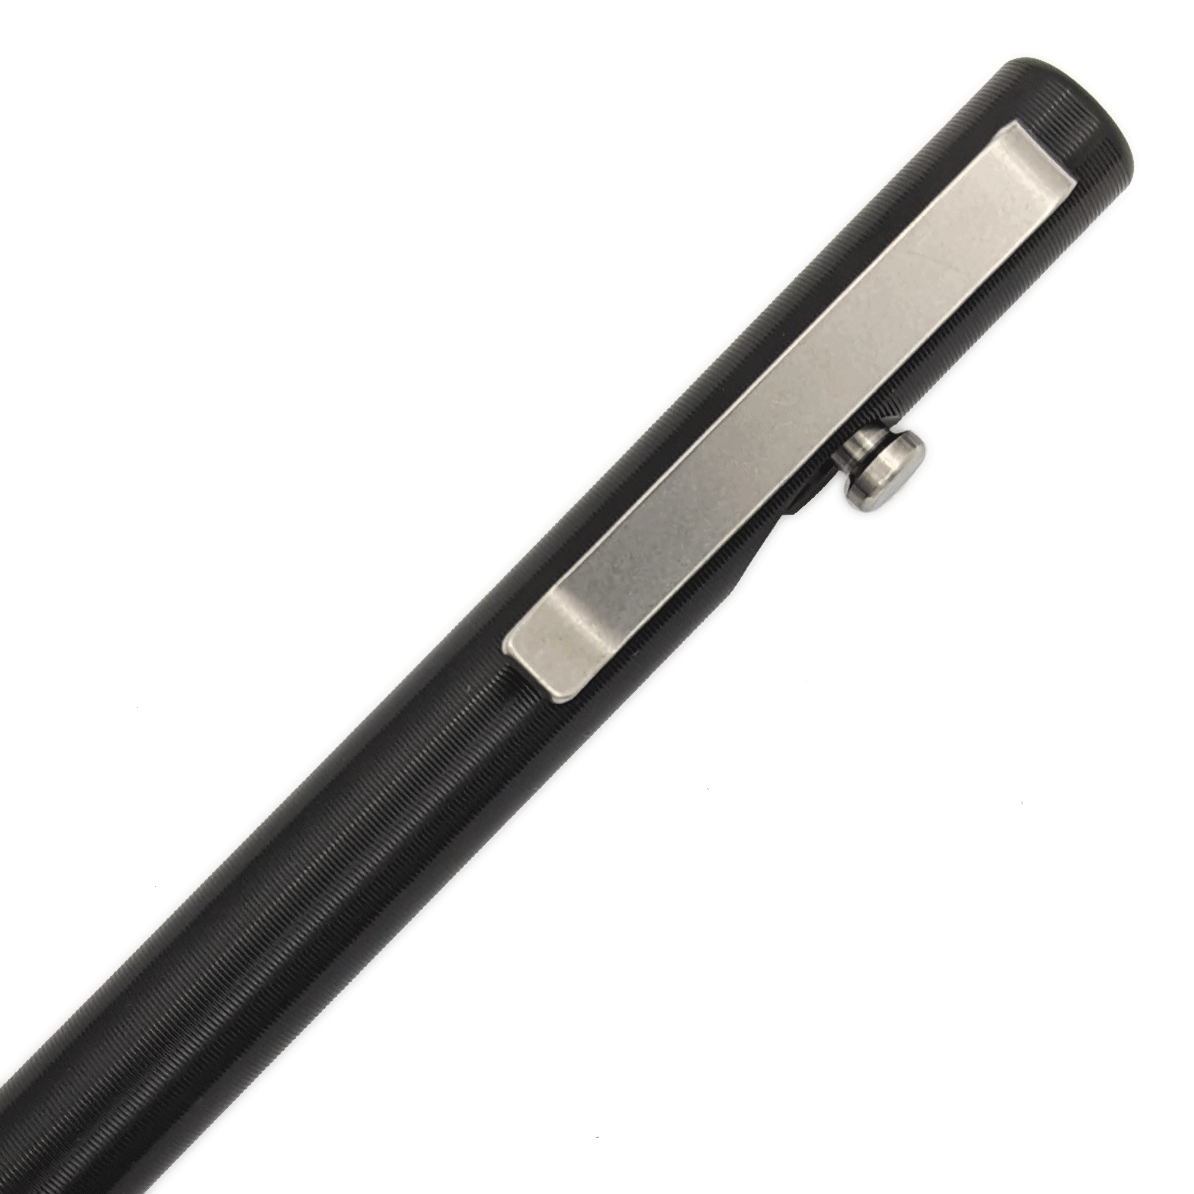 Bolt Action Pen - Aluminum Black